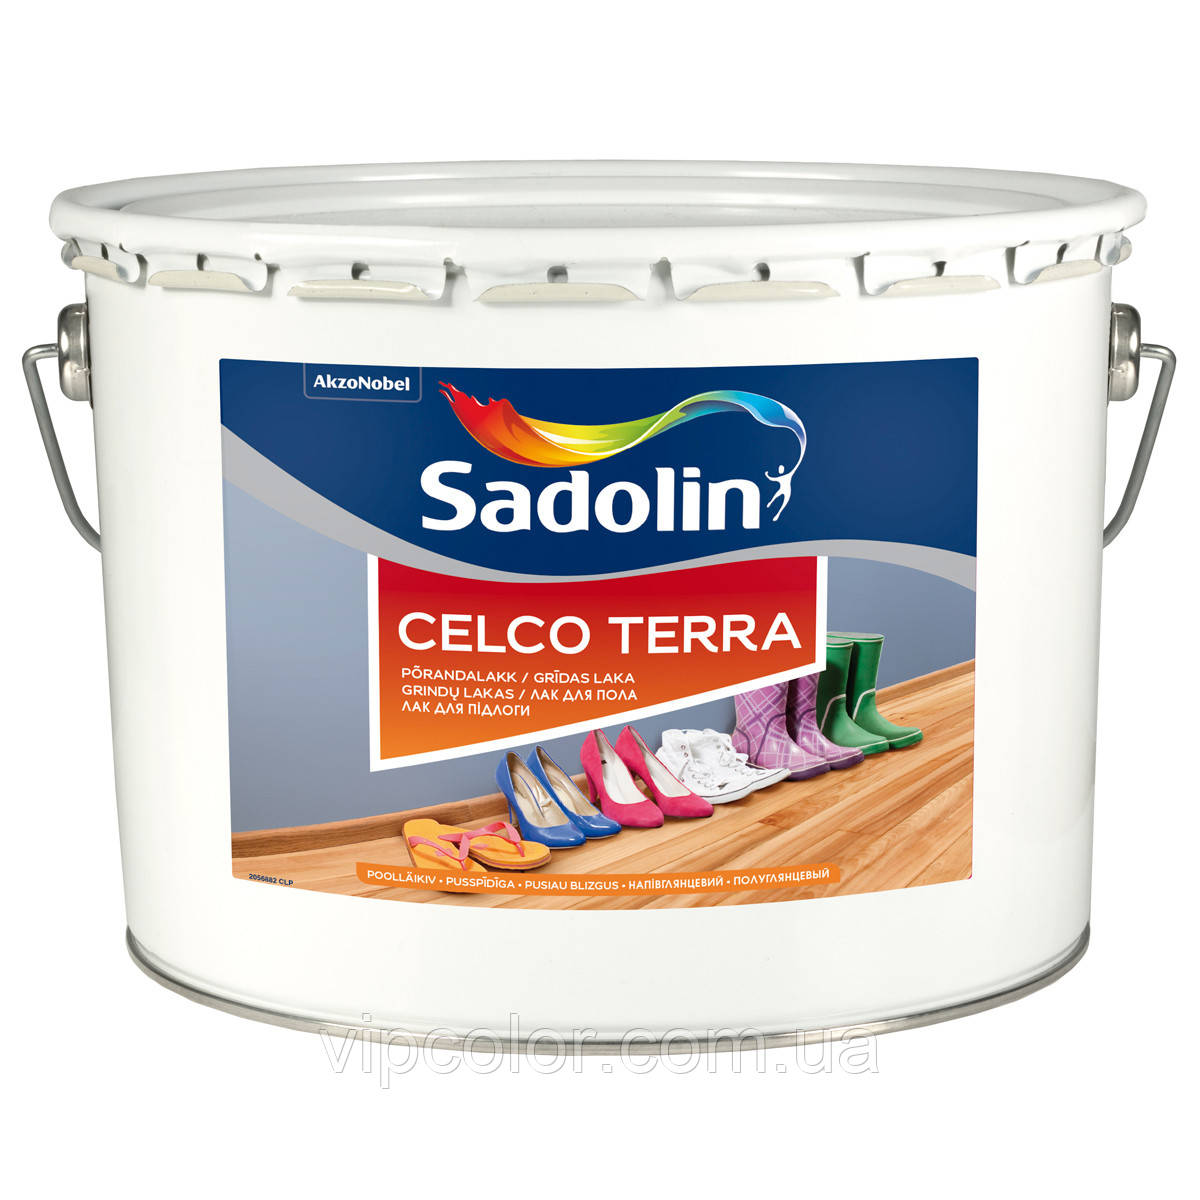 Sadolin Celco Terra 10 л зносостійкий лак для підлоги Напівглянцевий 45